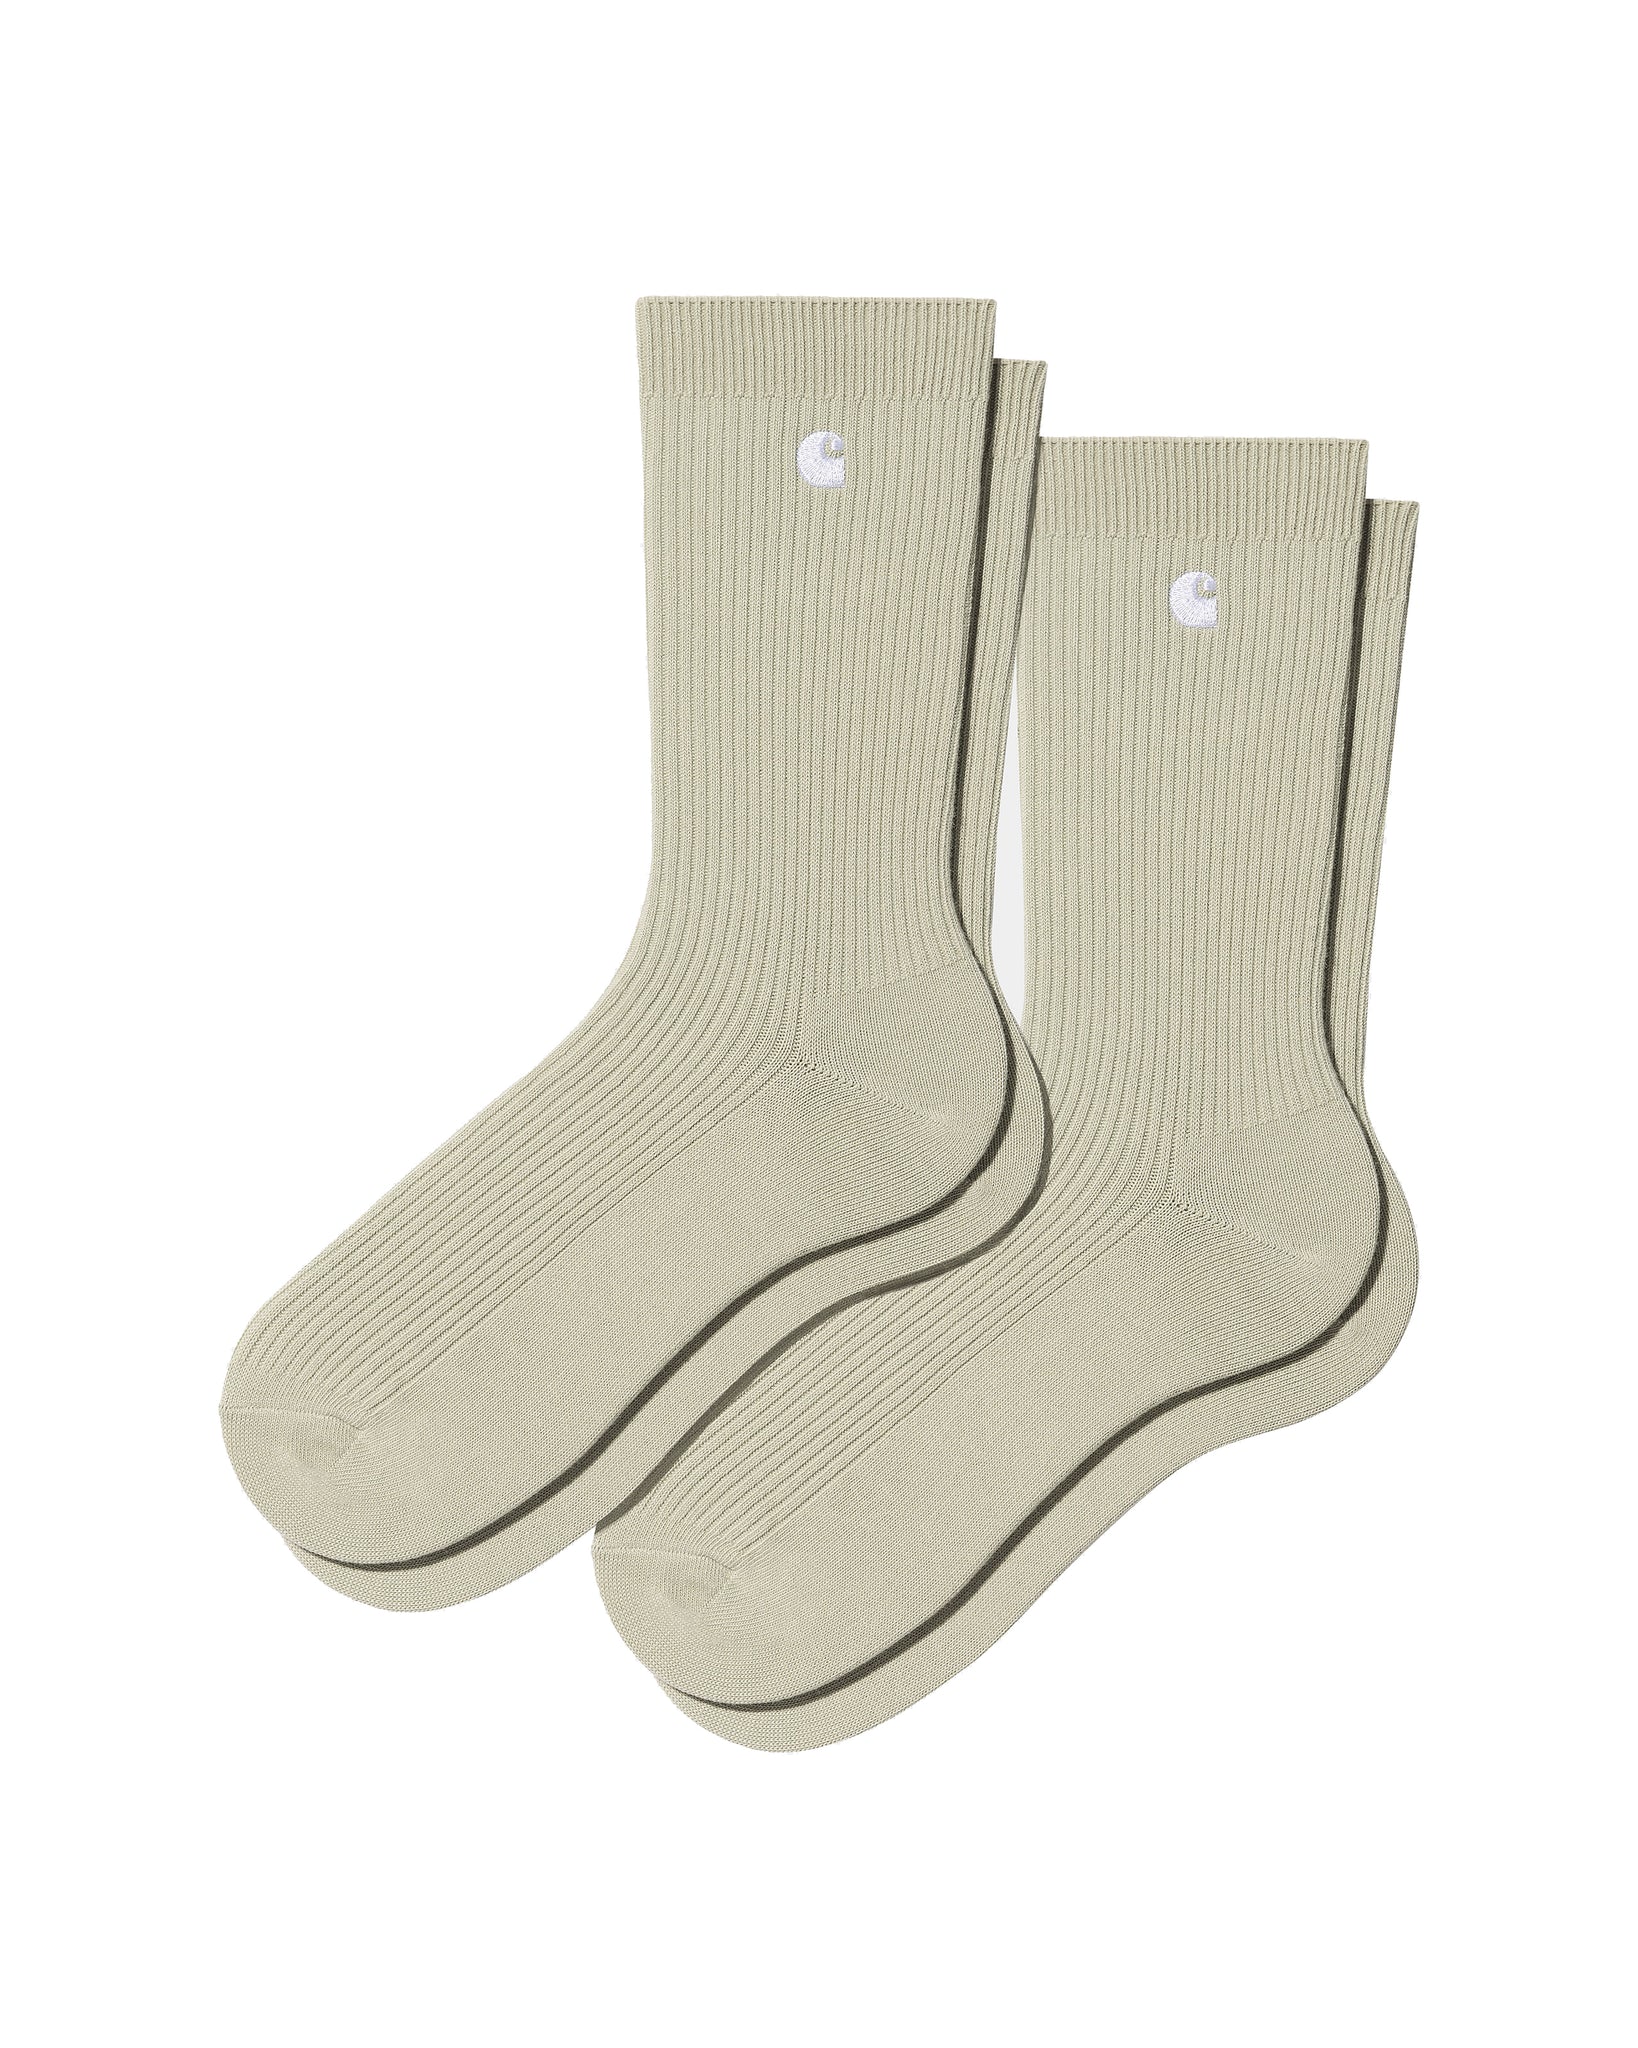 Madison socks (2 pairs Pack) - Beryl/White